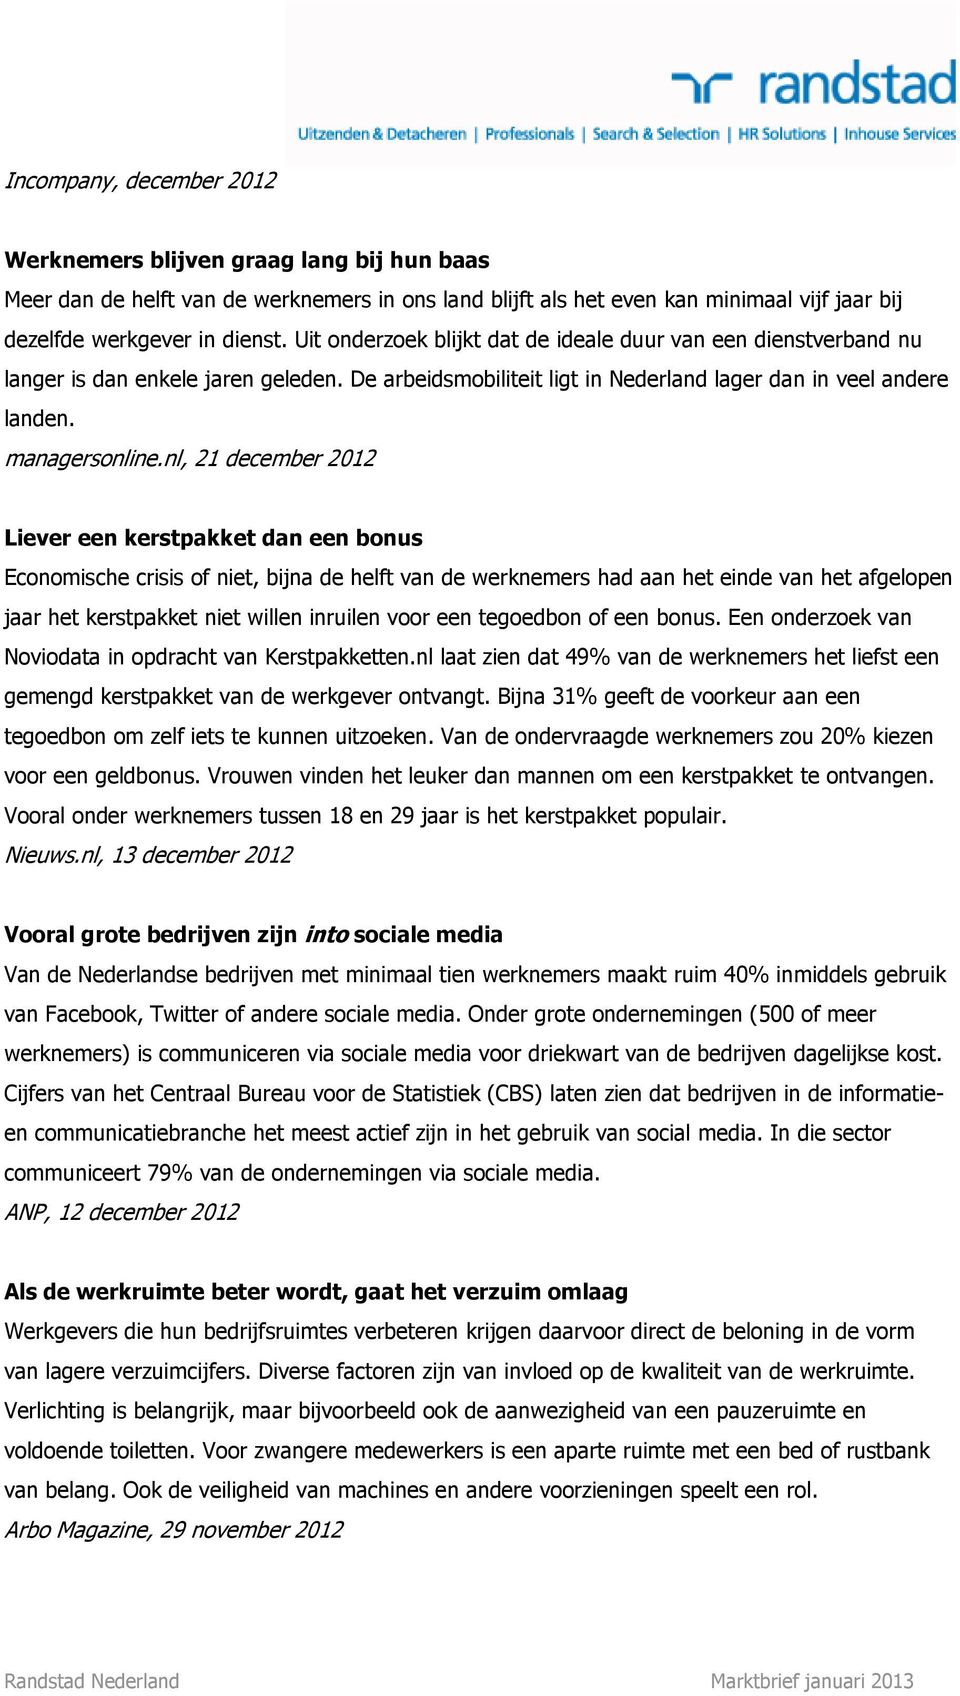 nl, 21 december 2012 Liever een kerstpakket dan een bonus Economische crisis of niet, bijna de helft van de werknemers had aan het einde van het afgelopen jaar het kerstpakket niet willen inruilen